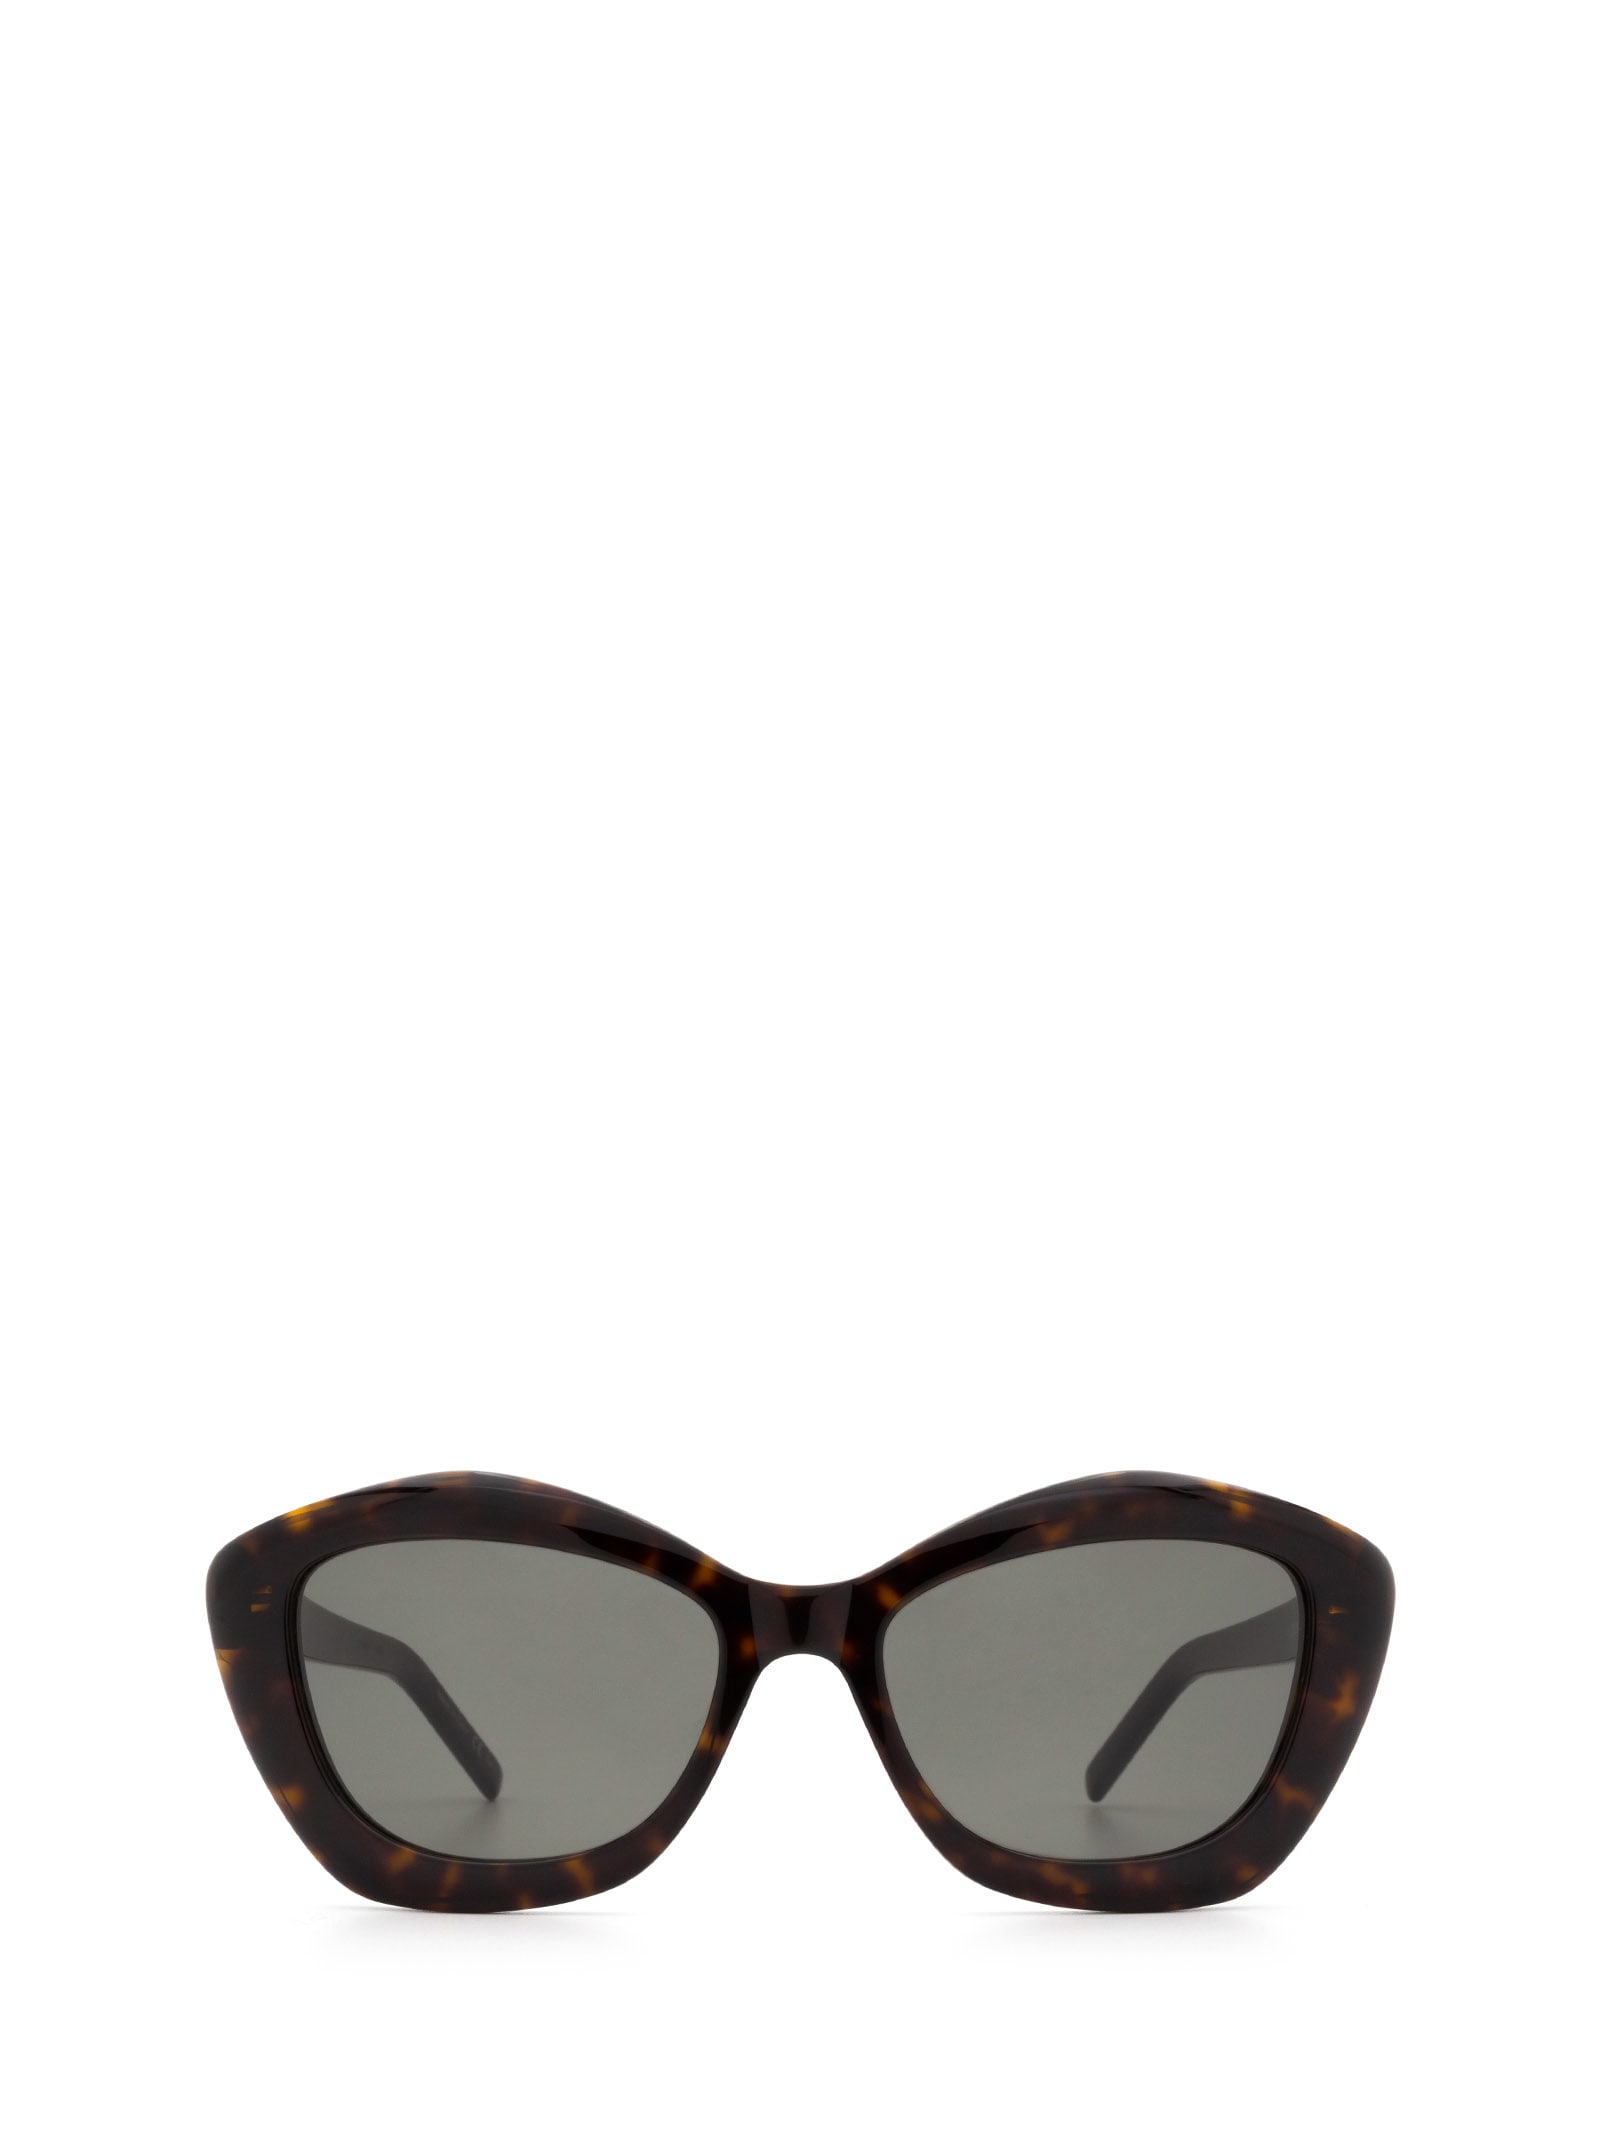 Saint Laurent Eyewear Saint Laurent Sl 68 Havana Sunglasses